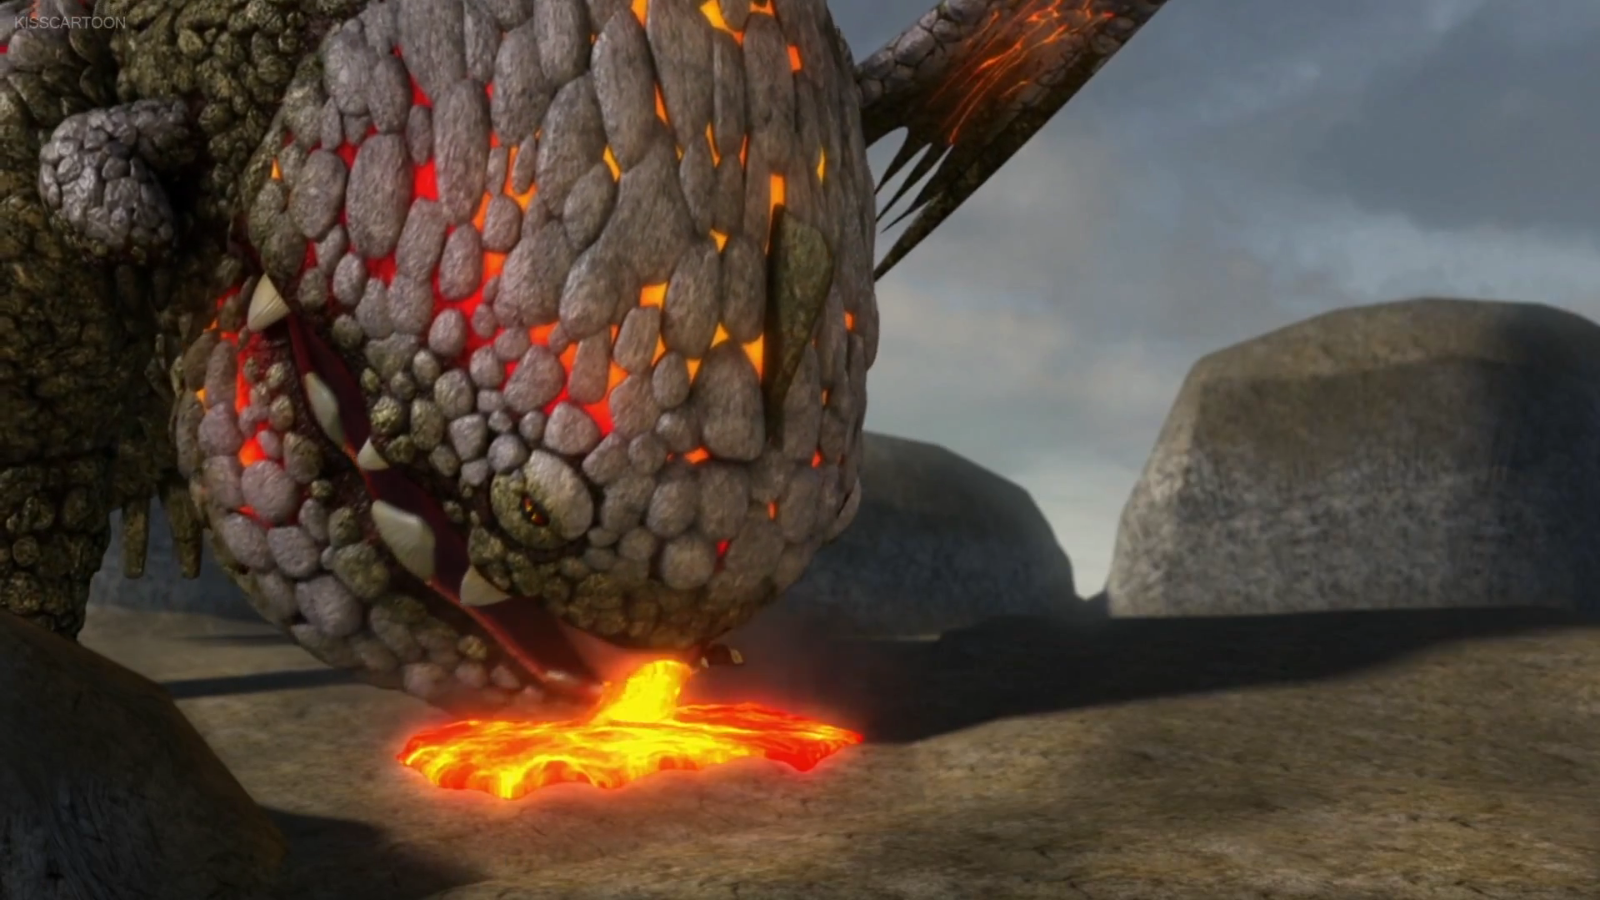 school of dragons code for eruptodon